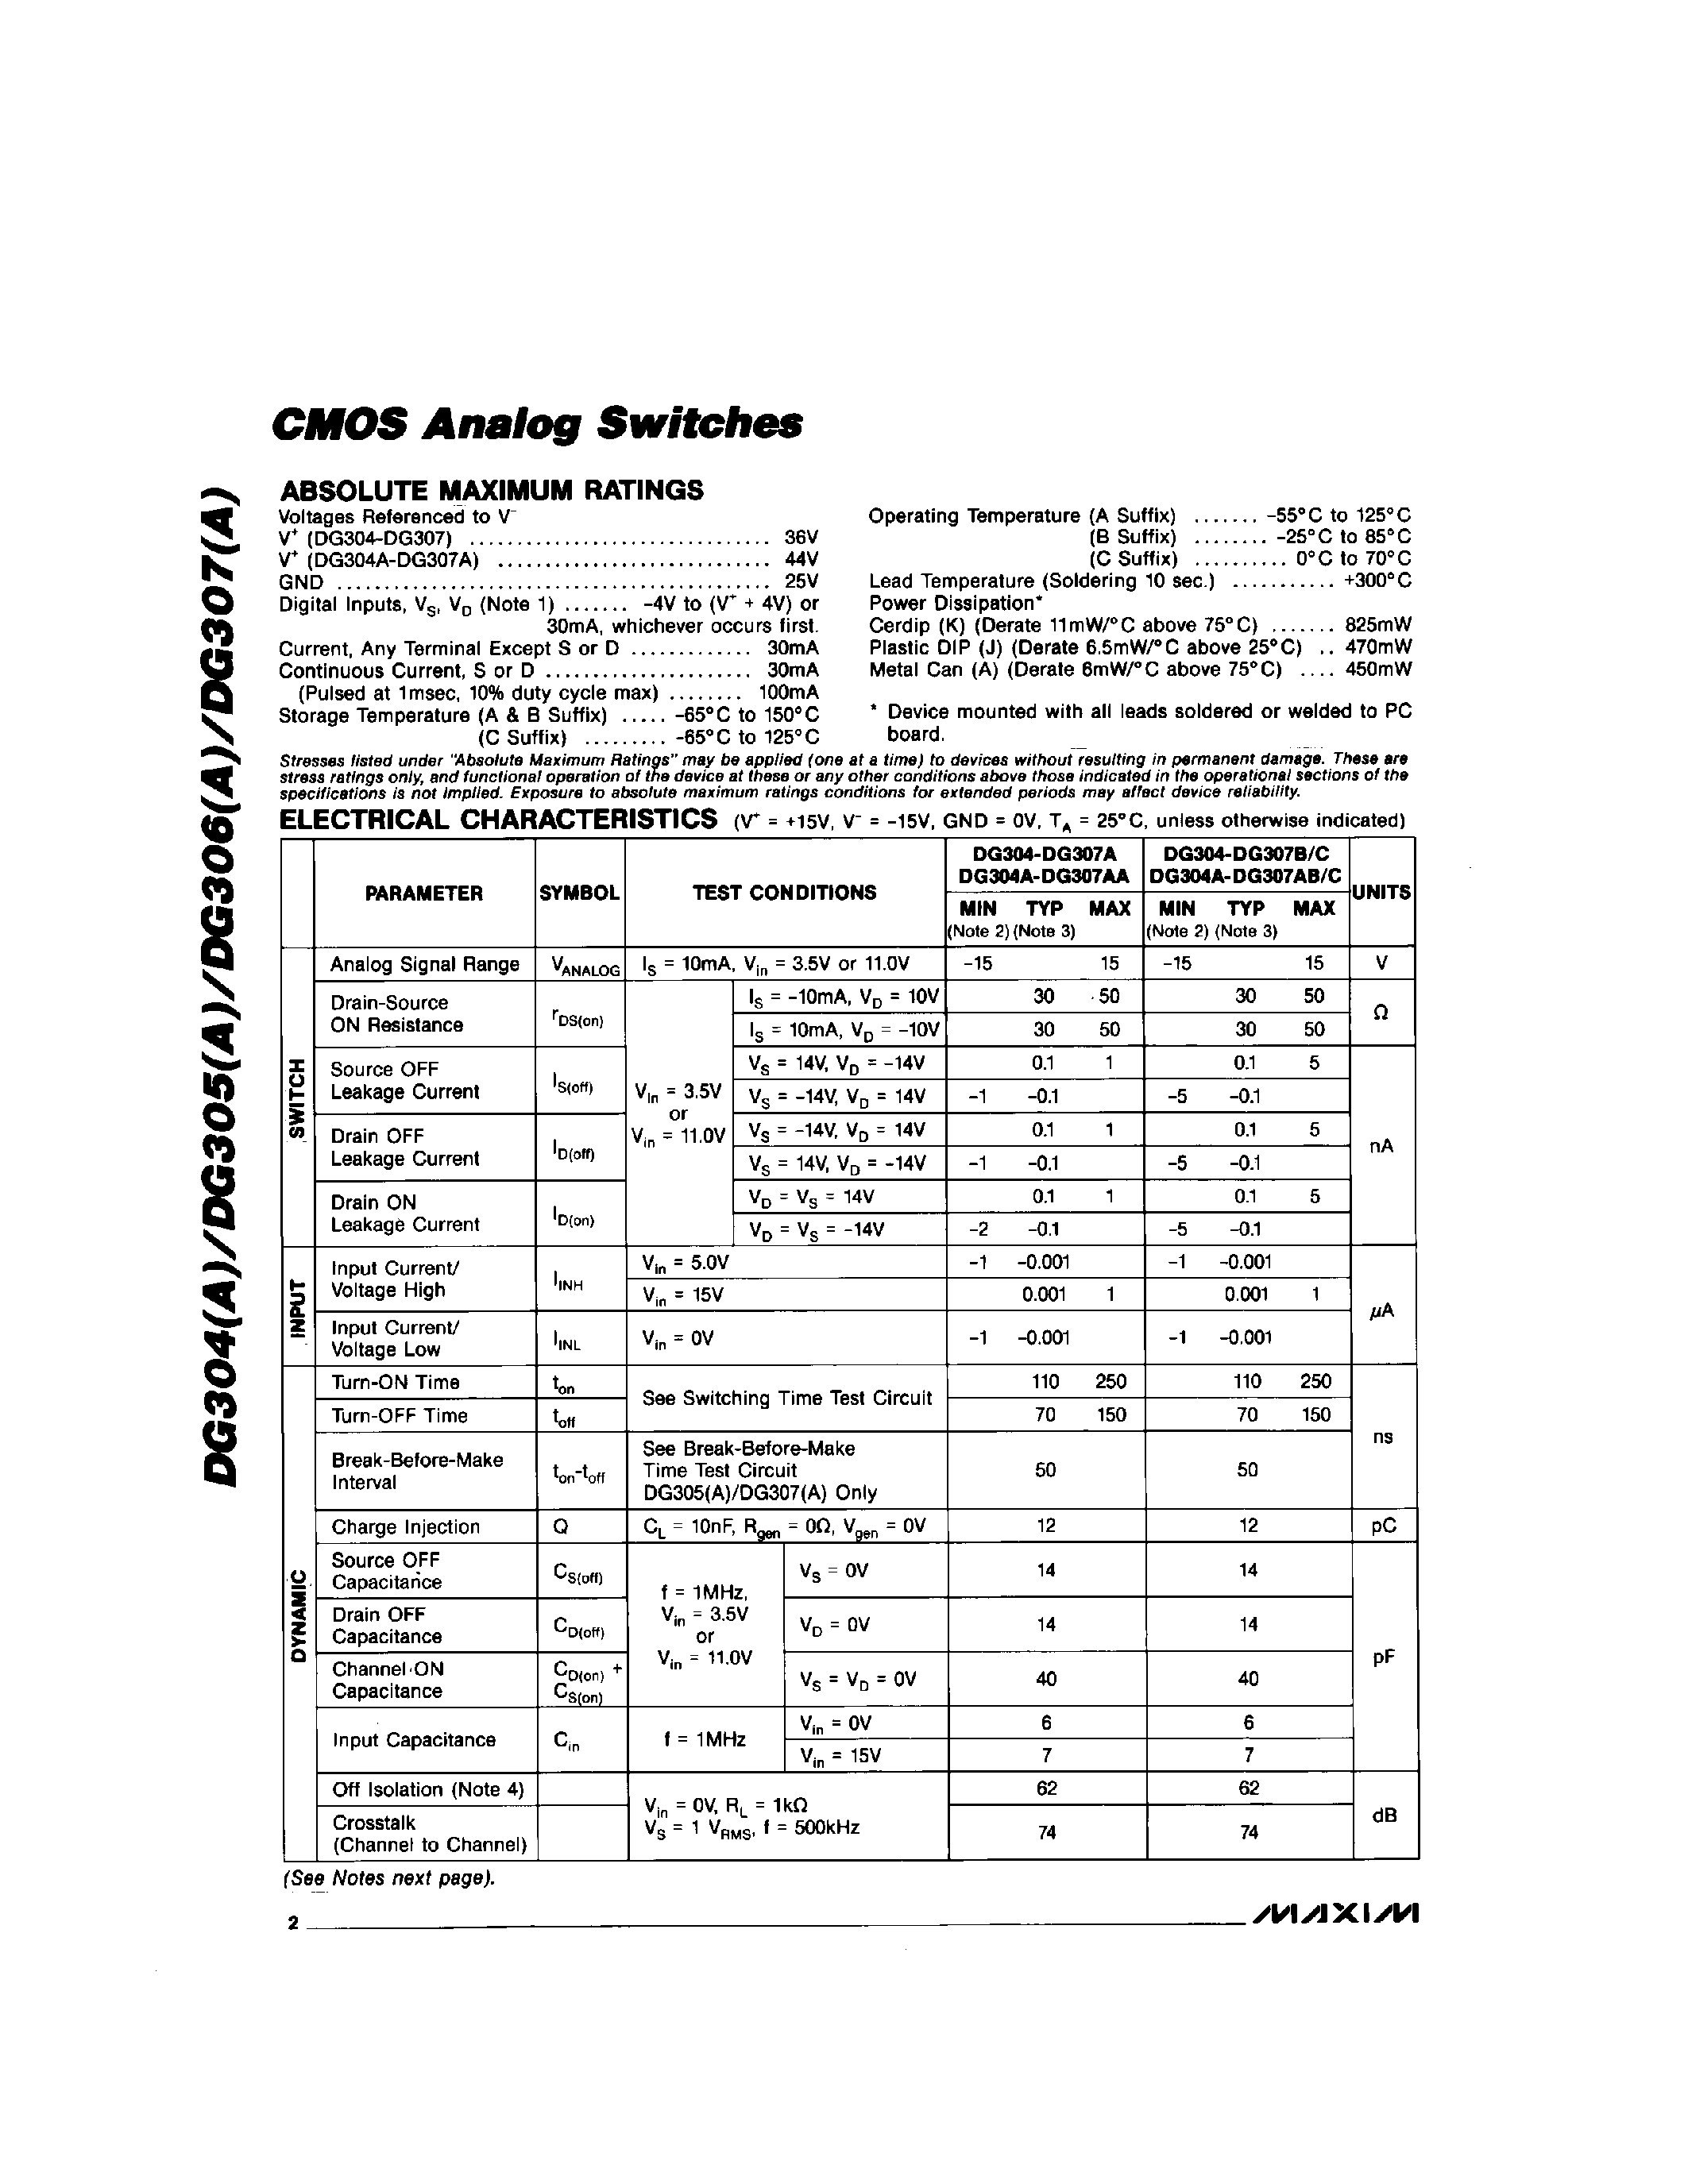 Даташит DG307C/D - CMOS Analog Switchs страница 2